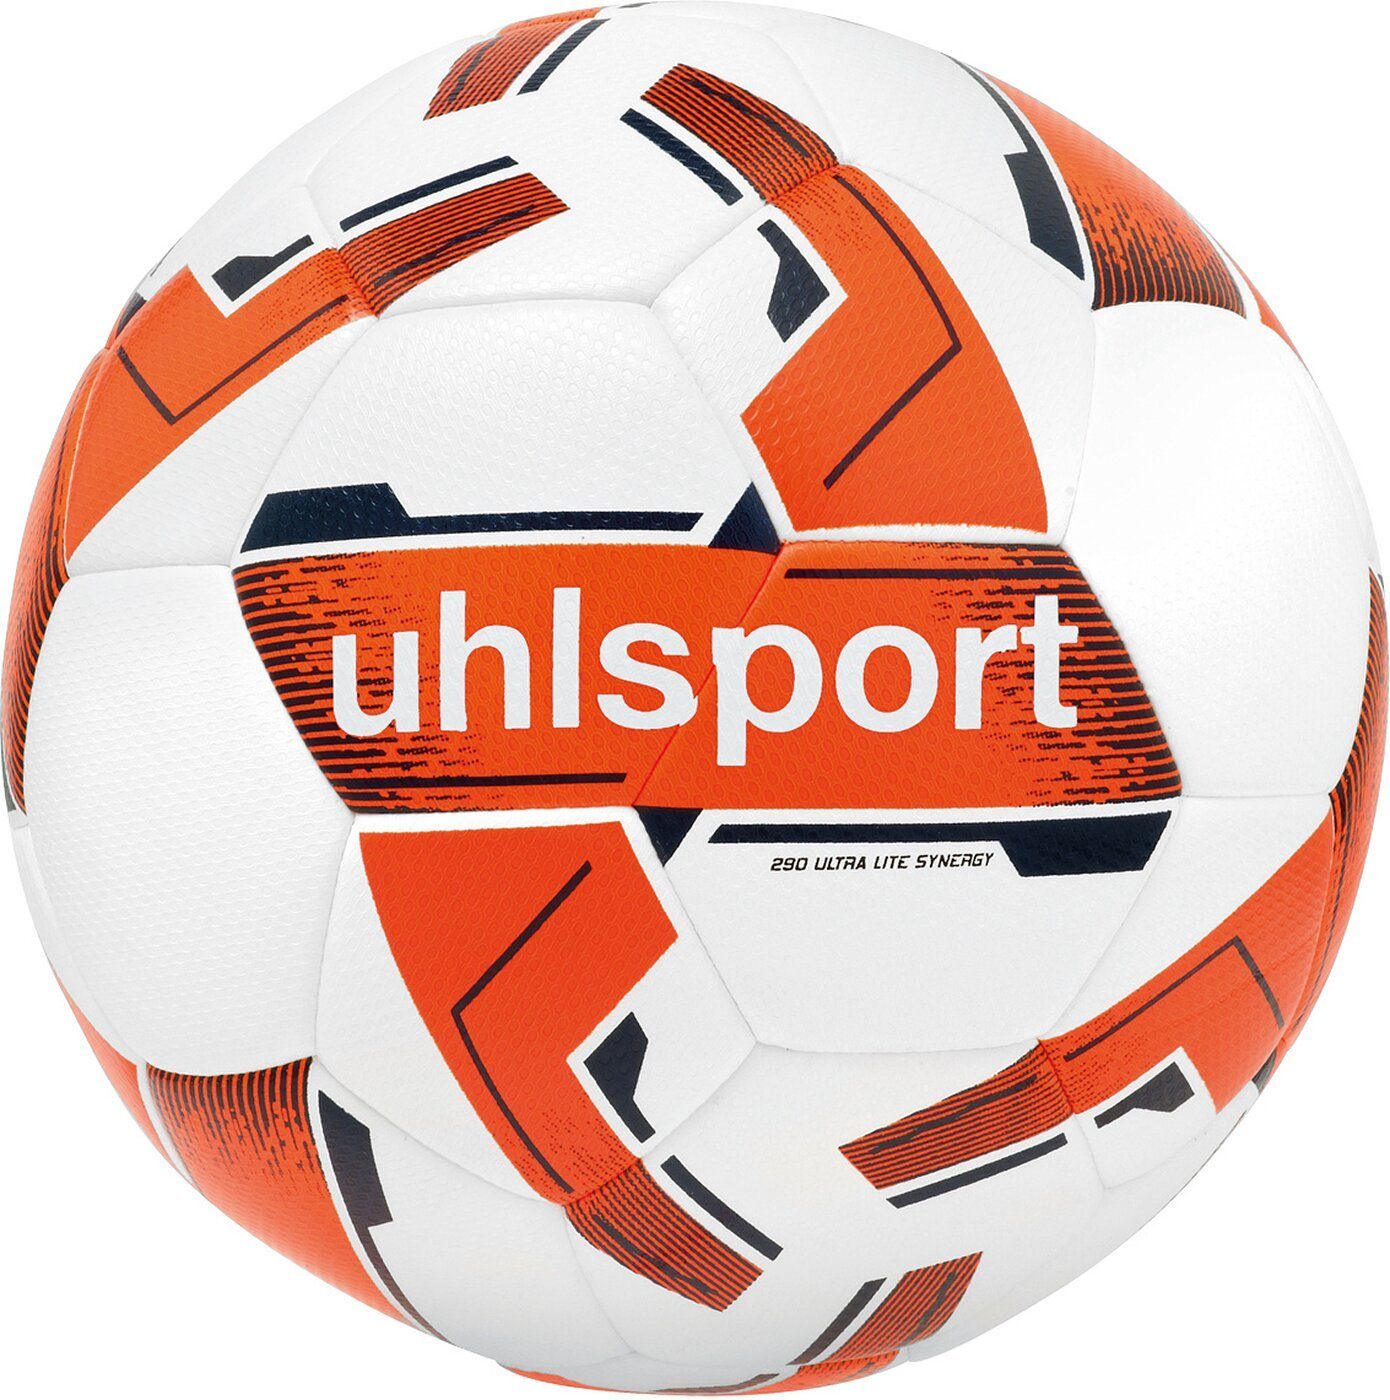 uhlsport Fußball 290 SYNERGY 02 LITE weiß/fluo orange/marine ULTRA